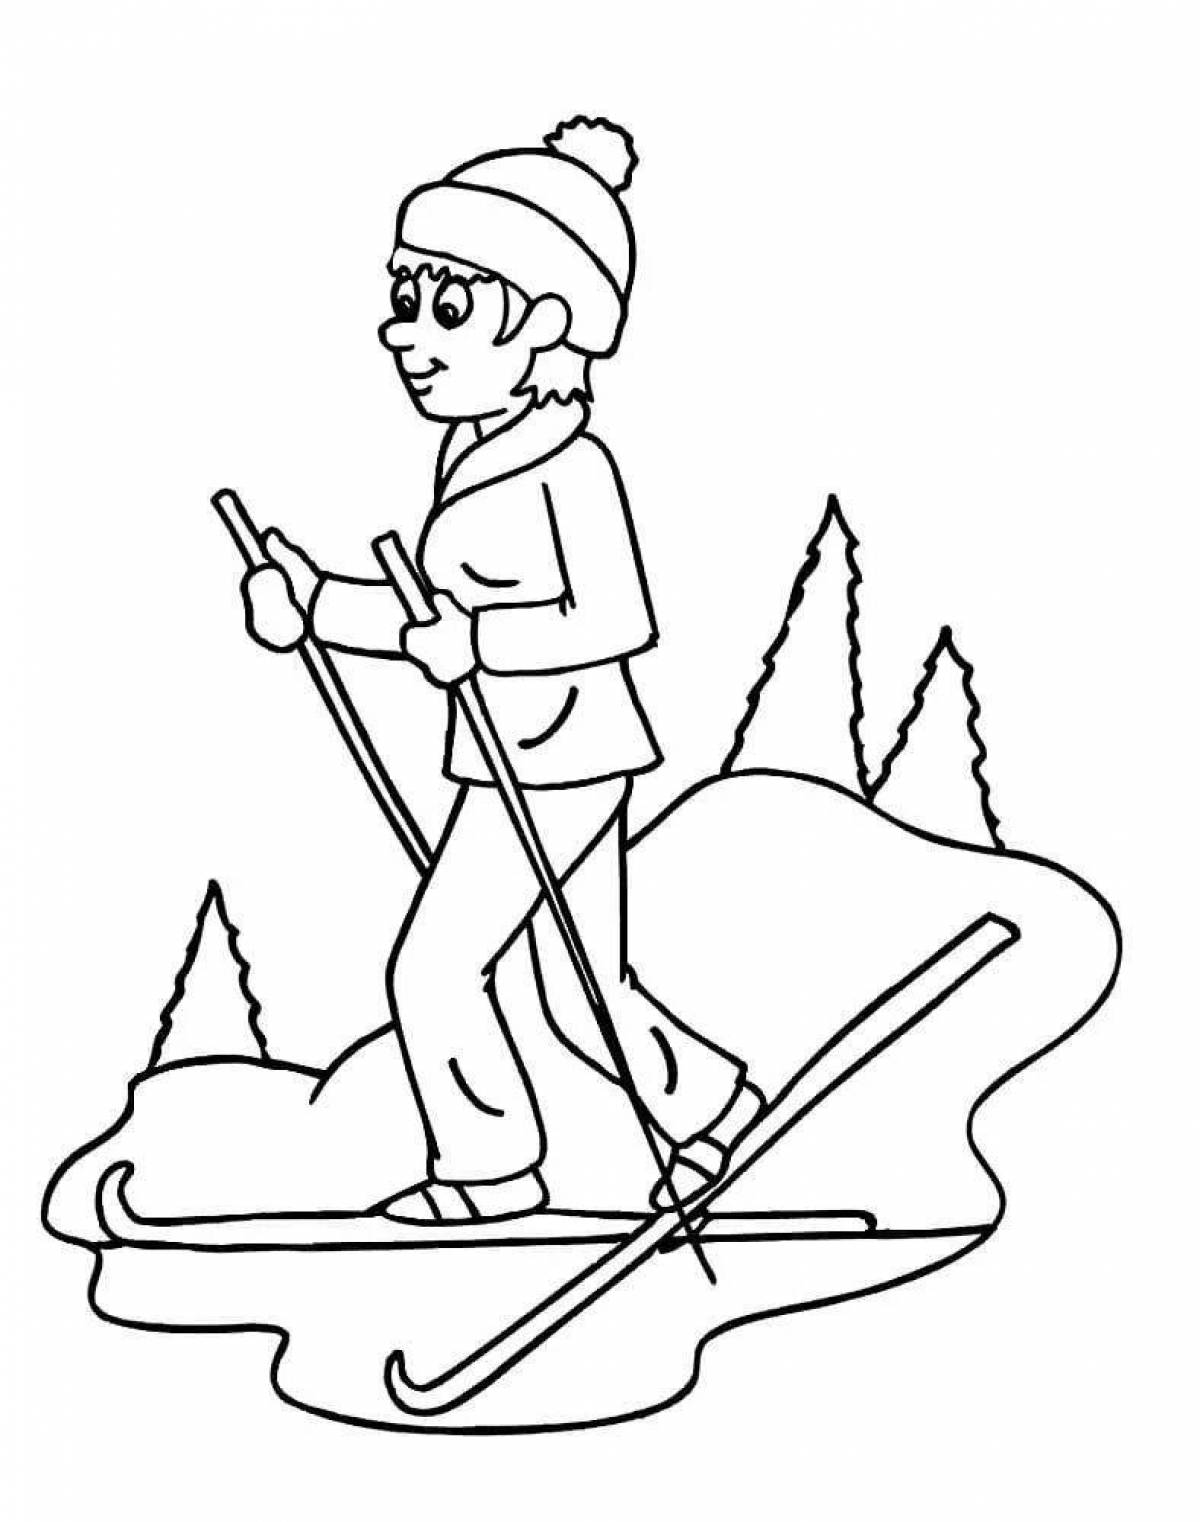 Увлекательные лыжи для детей